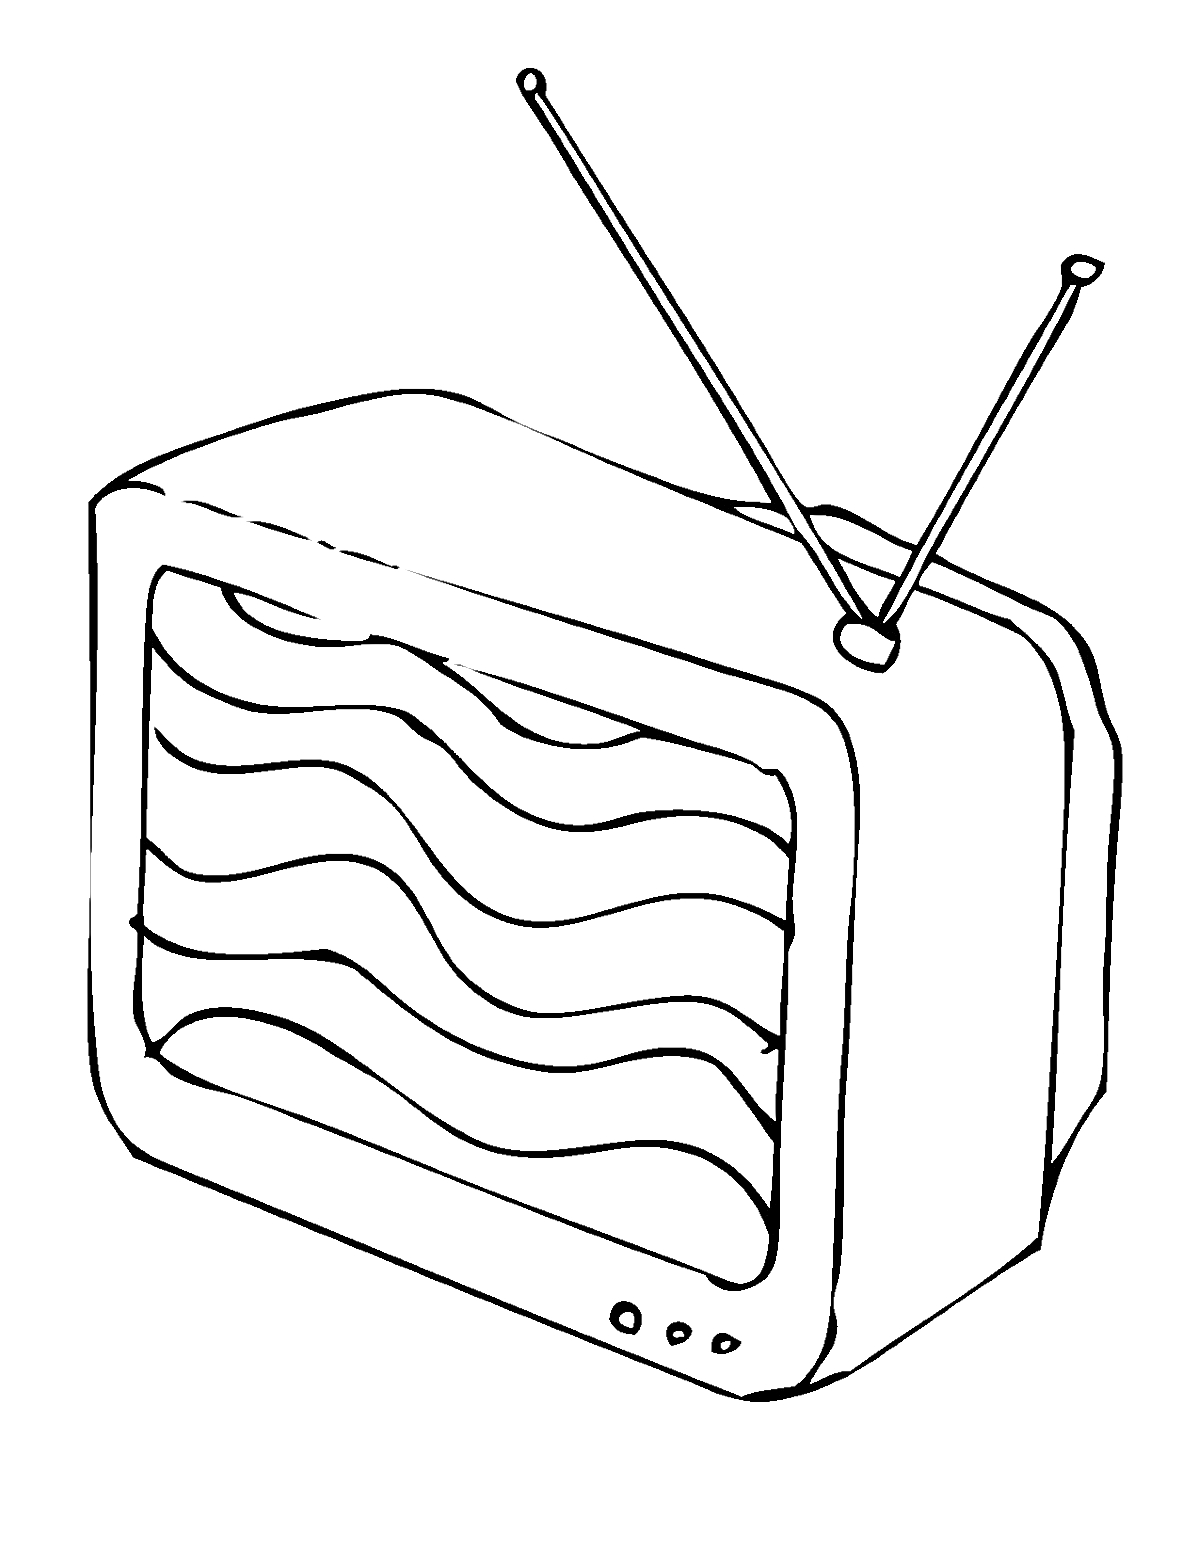 Телевизор с антеннами и волнами на экране